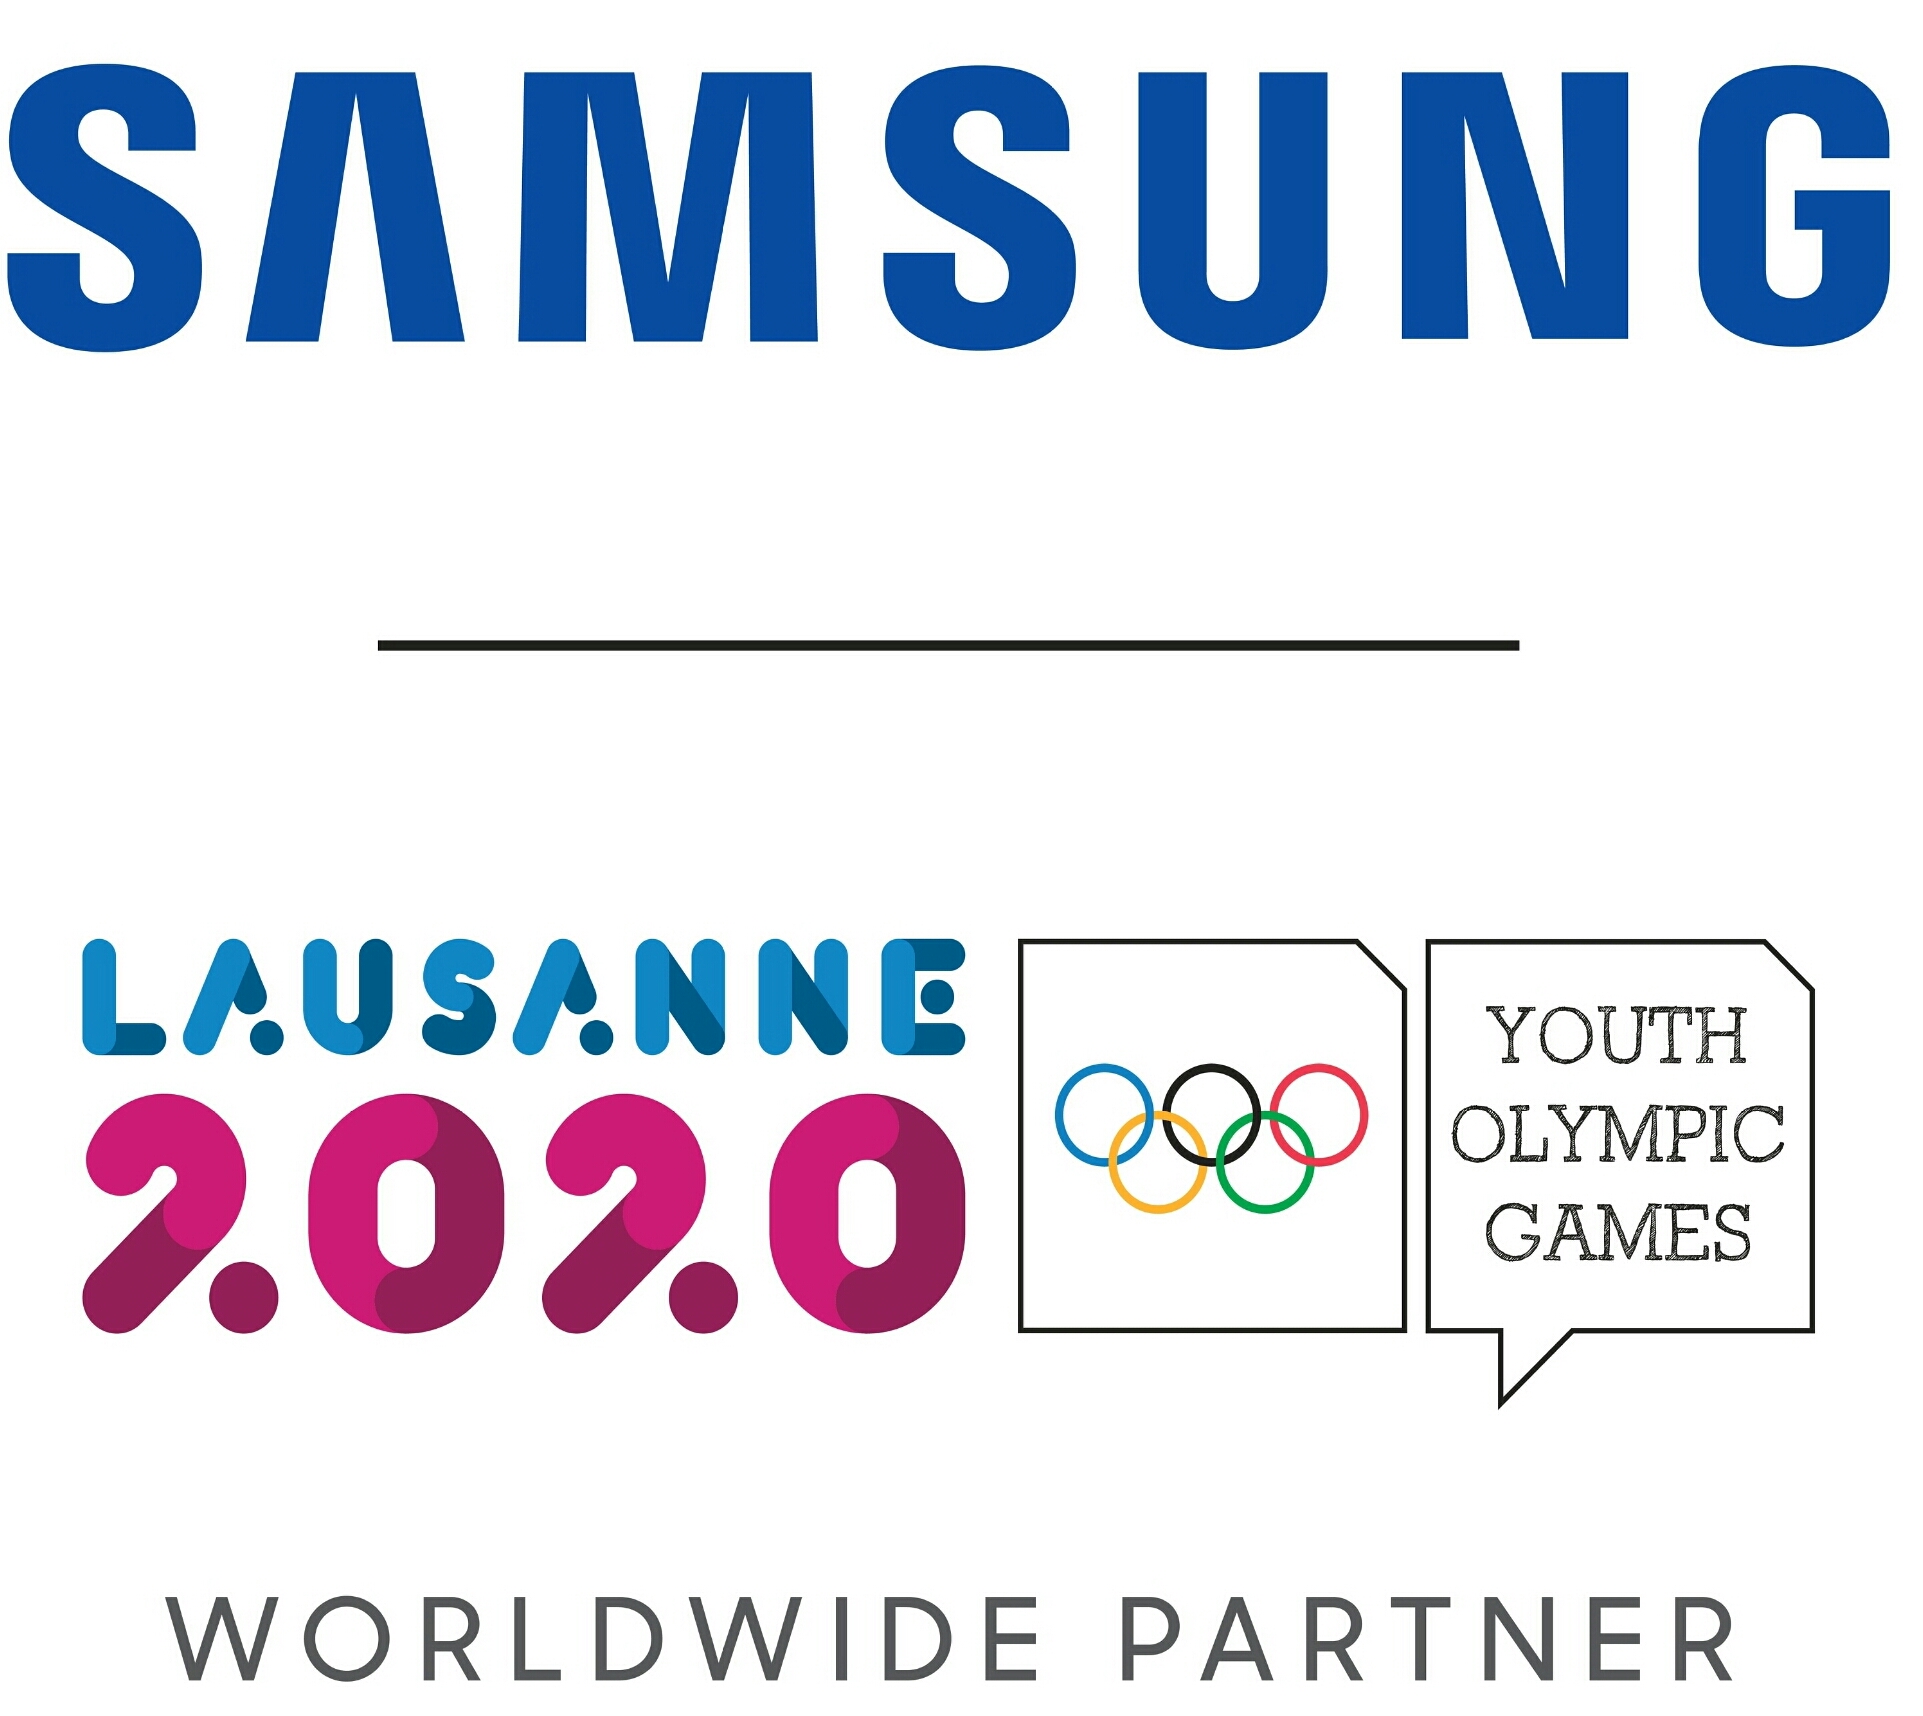 سامسونج تواصل التزامها بدعم الألعاب الأولمبية العالمية والرياضيين الشباب الشتوية في لوزان 2020